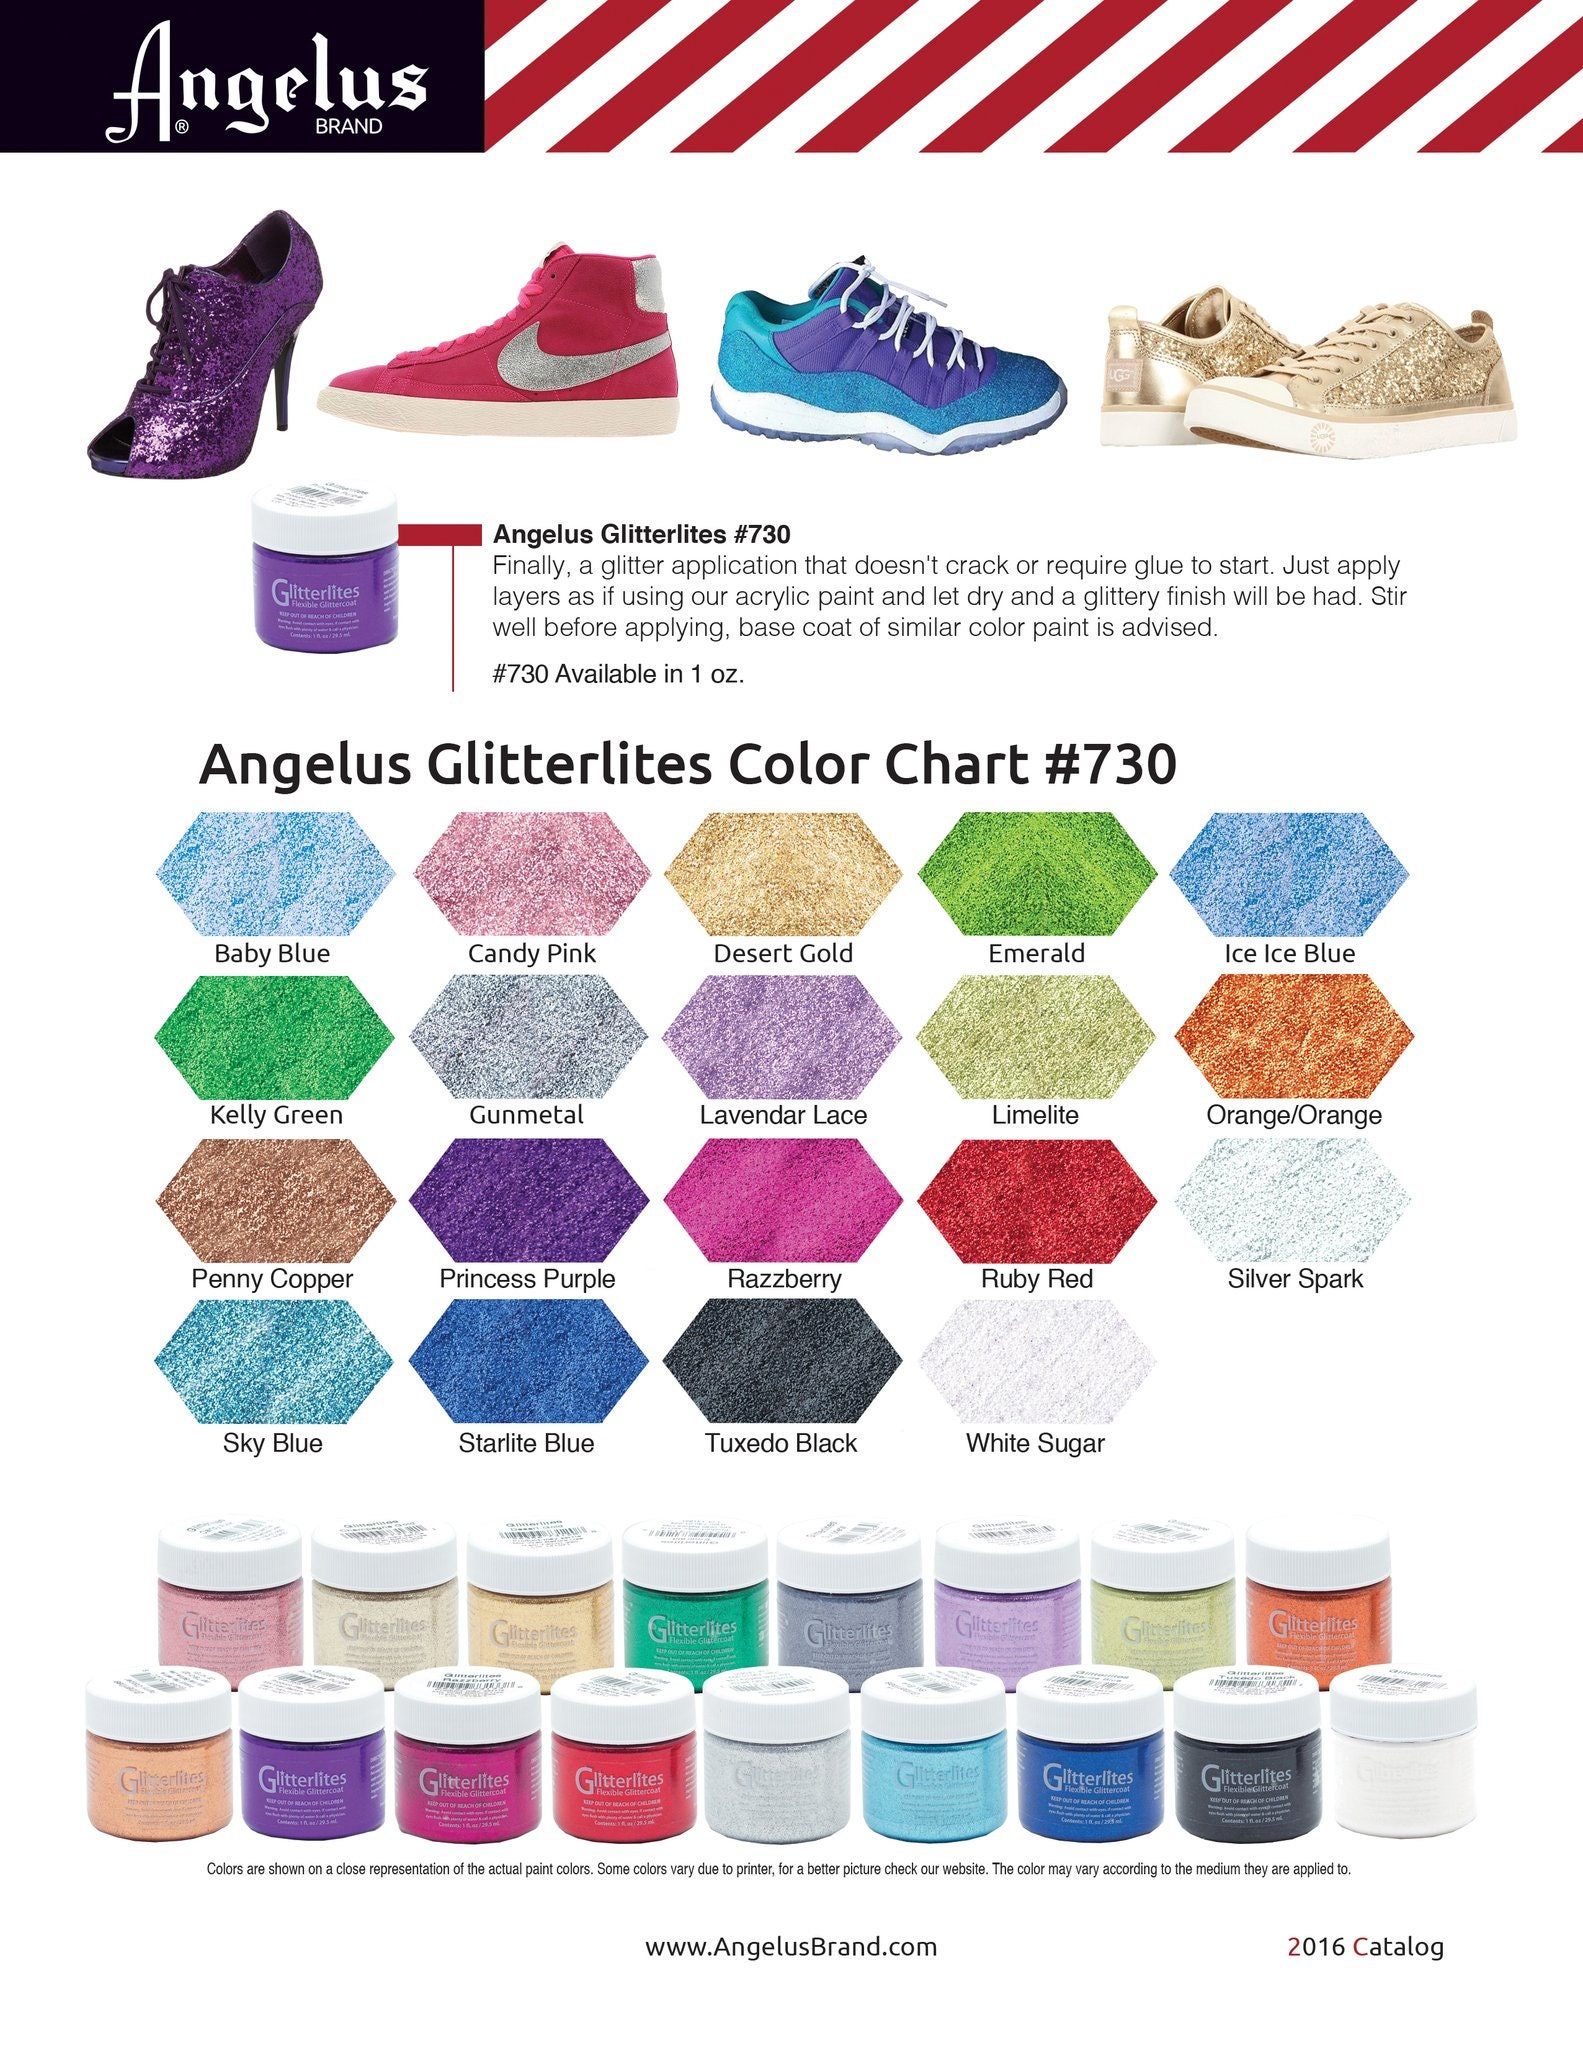 Complete Angelus Glitterlites Kit - 19 Colors